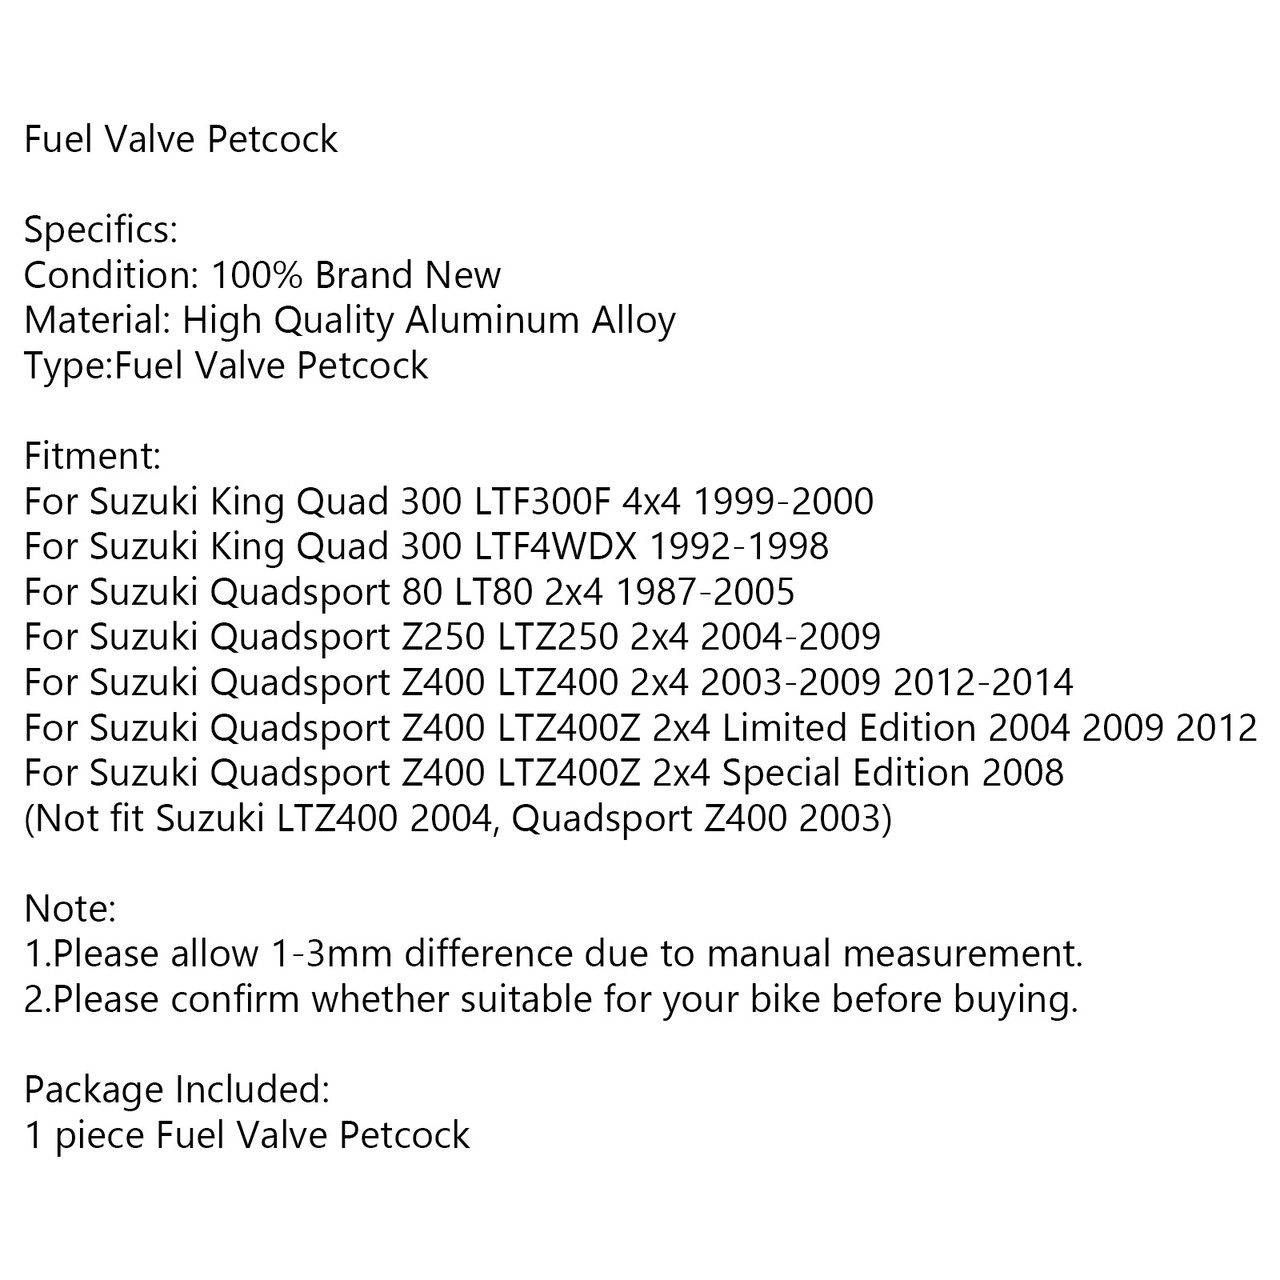 Gas Fuel Petcock Valve Switch For Suzuki King Quad 300 LTF300F 4x4 99-00 300 LTF4WDX 92-98 Quadsport 80 LT80 2x4 87-05 Z250 LTZ250 2x4 04-09 Z400 LTZ400 2x4 03-09 12-14